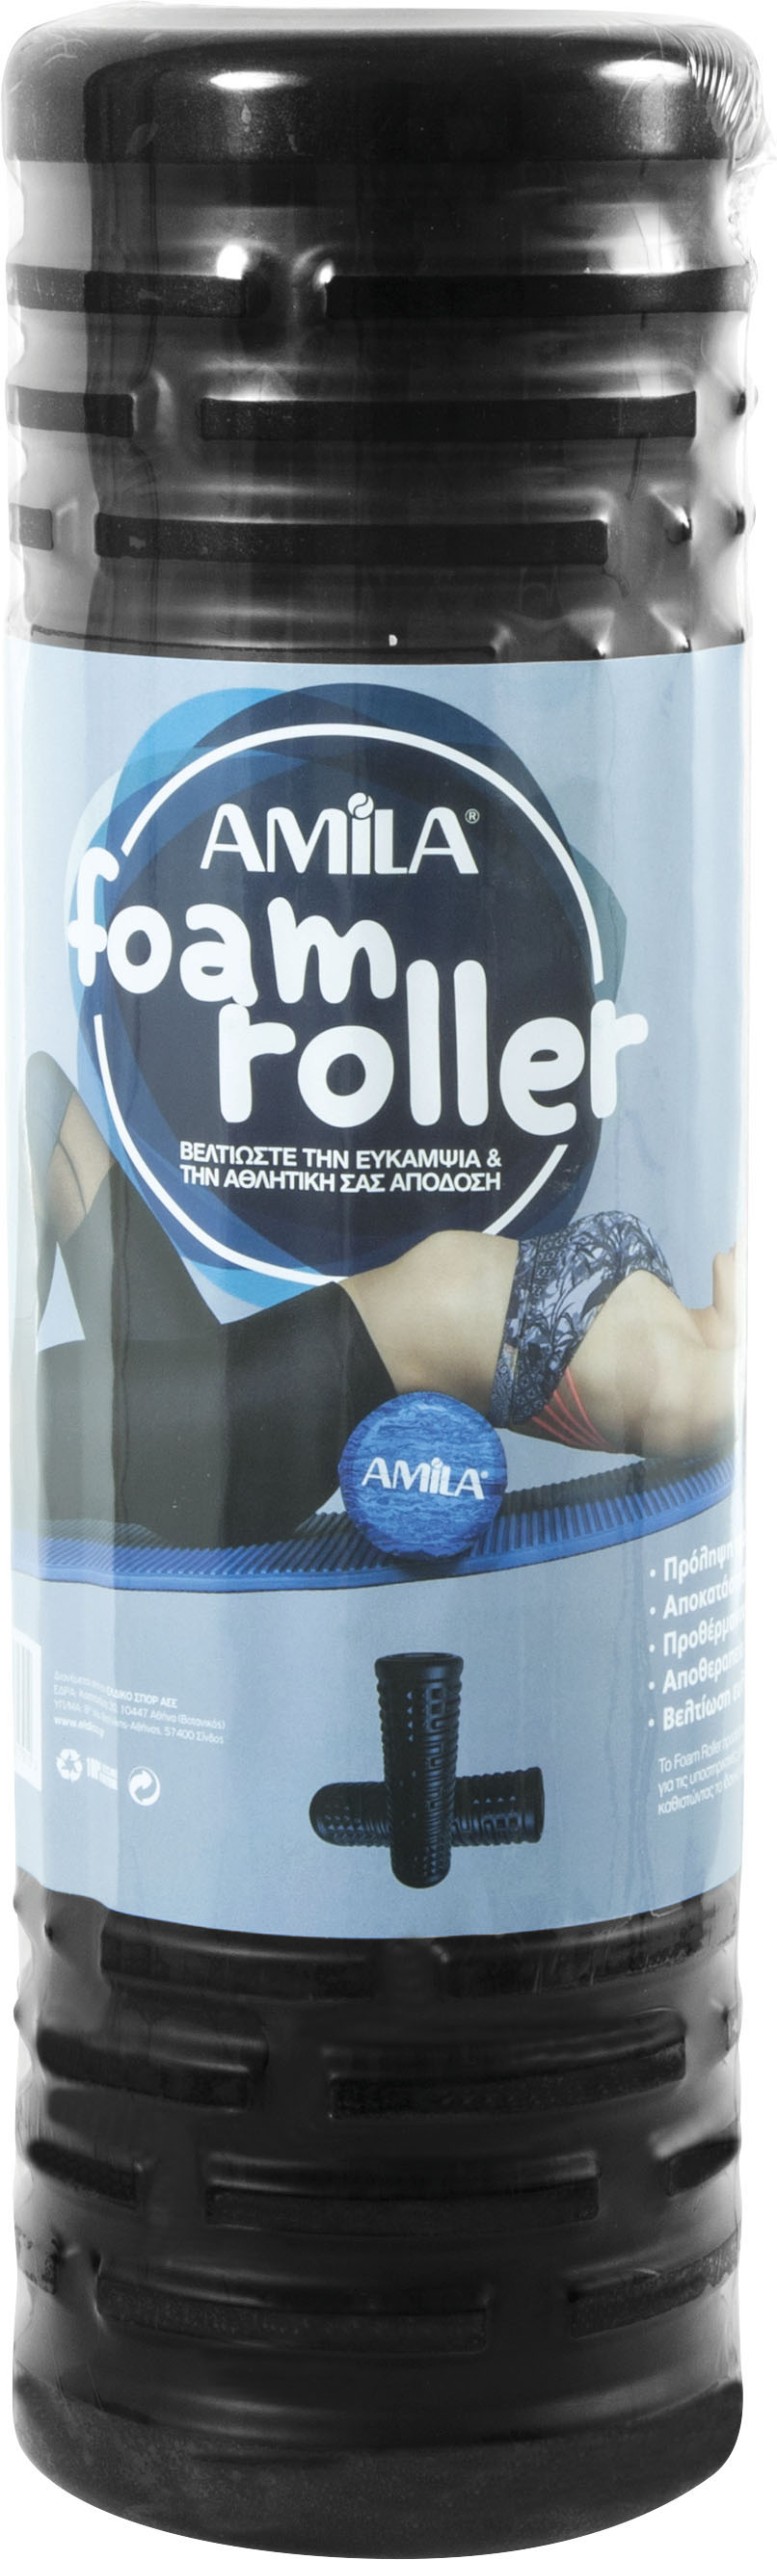 AMILA Foam Roller Purse Φ13x45cm